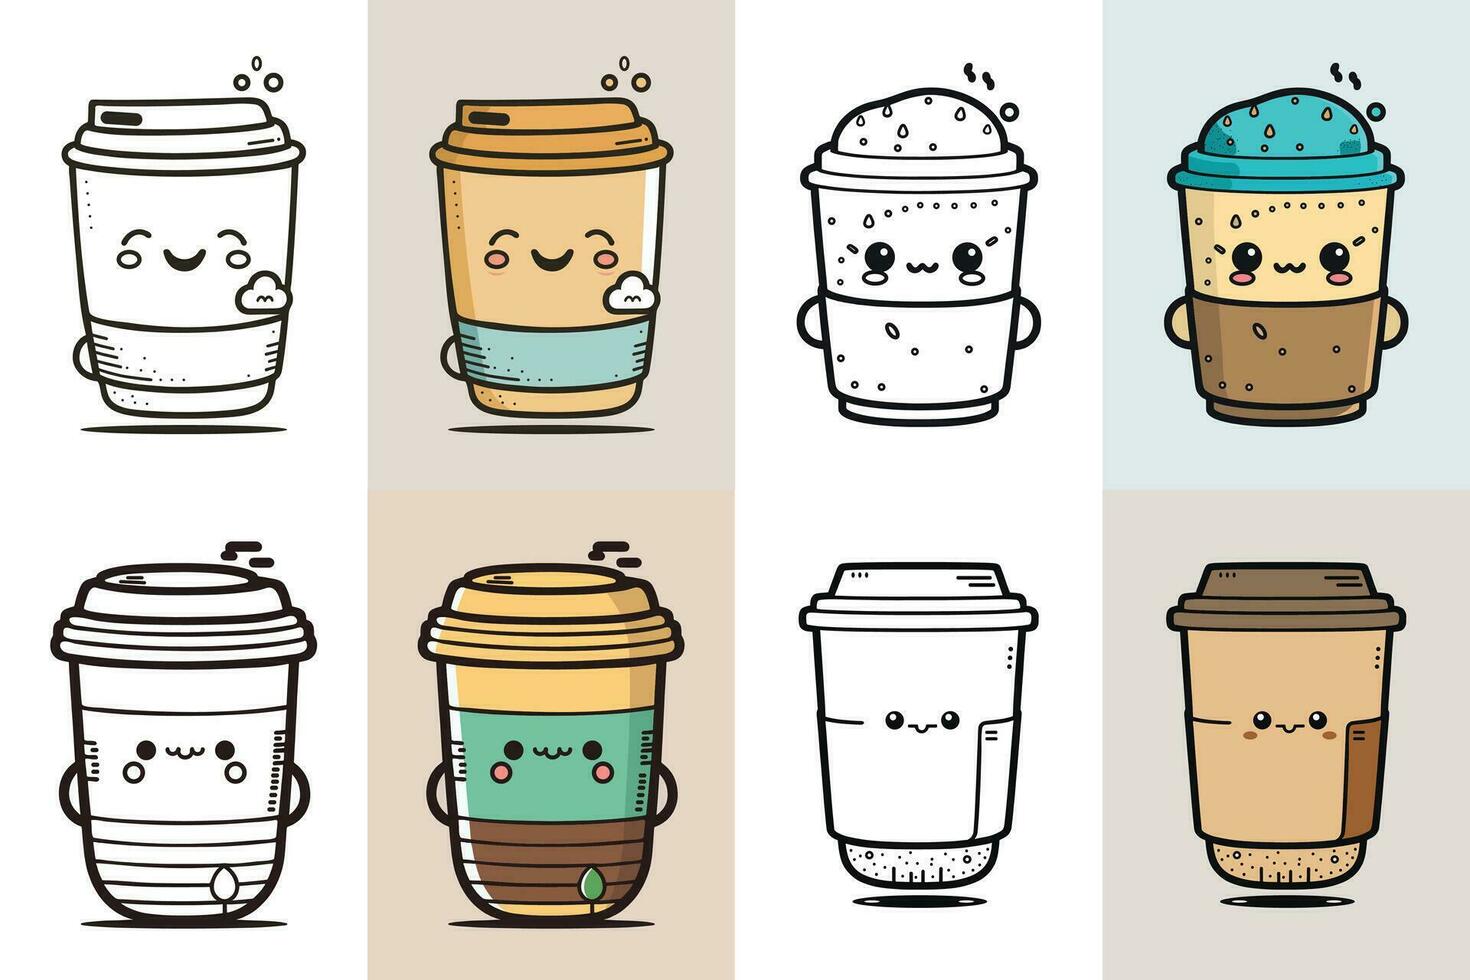 caffè tazza logo design fascio, carino caffè tazza personaggio design fascio, colorato caffè tazza icona disegno, cibo e bevanda vettore illustrazione, linea arte caffè tazza illustrazione